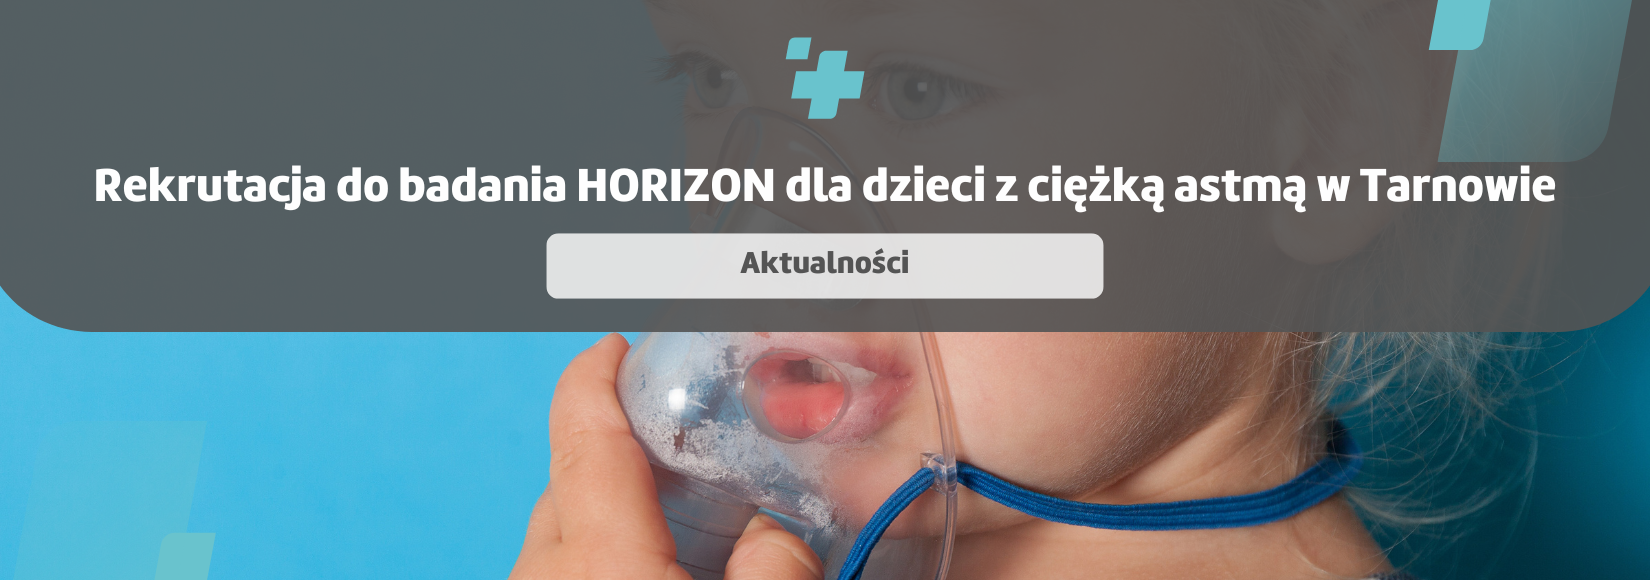 Rekrutacja do badania HORIZON dla dzieci z ciężką astmą w Tarnowie